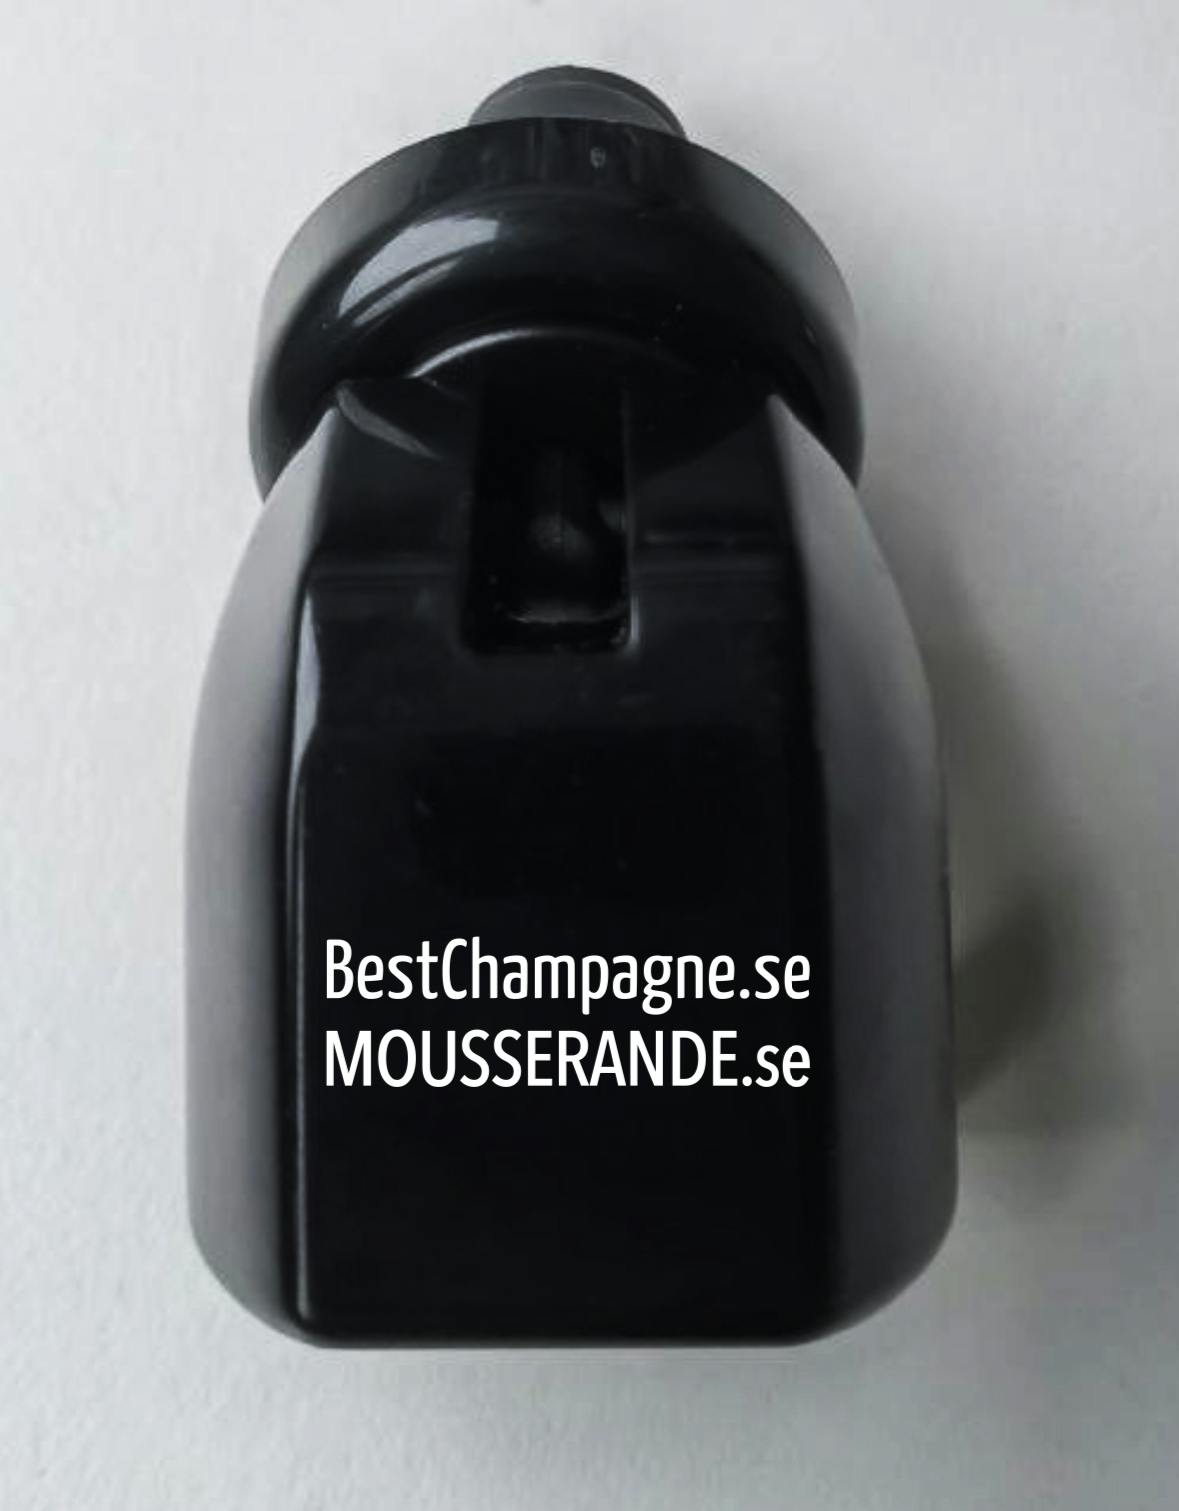 Champagnestopper Mousserande.se/BestChampagne.se 75kr